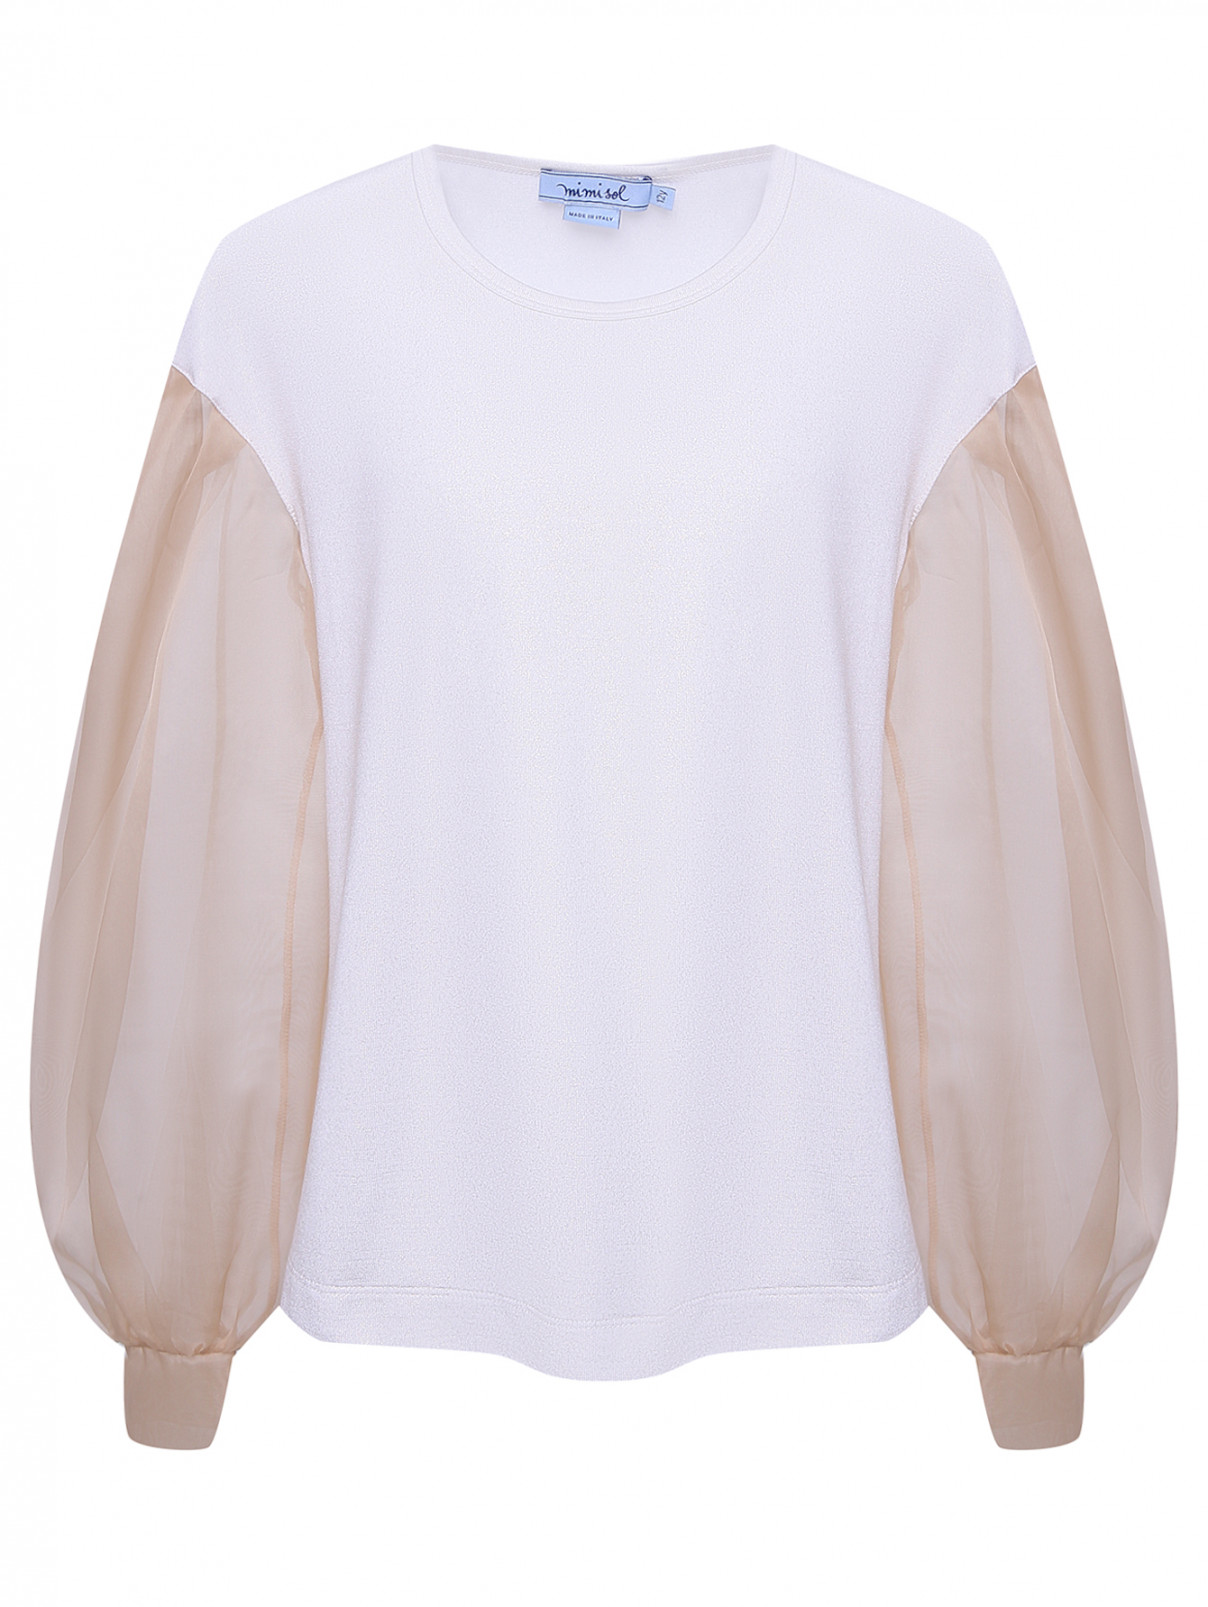 Блуза с рукавами из шелковой органзы MiMiSol  –  Общий вид  – Цвет:  Белый